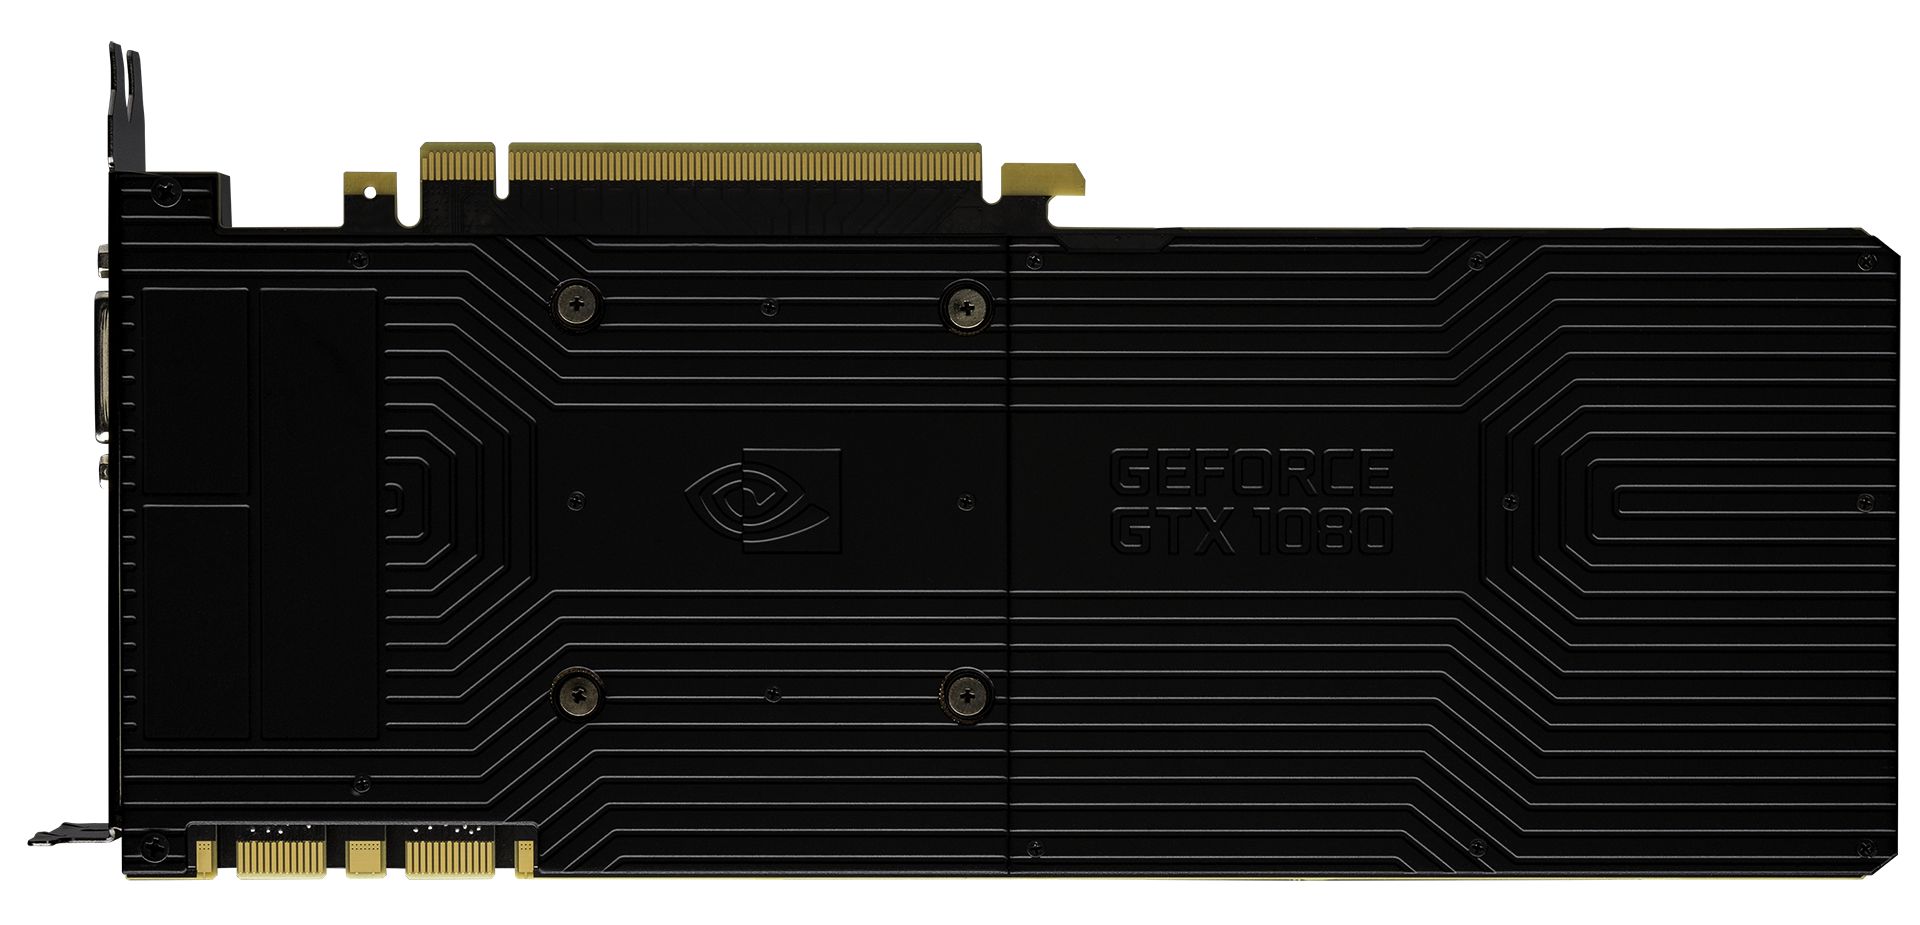 Nvidia GeForce GTX 1080 (Desktop) Review – Pascal has arrived -  NotebookCheck.net Tech